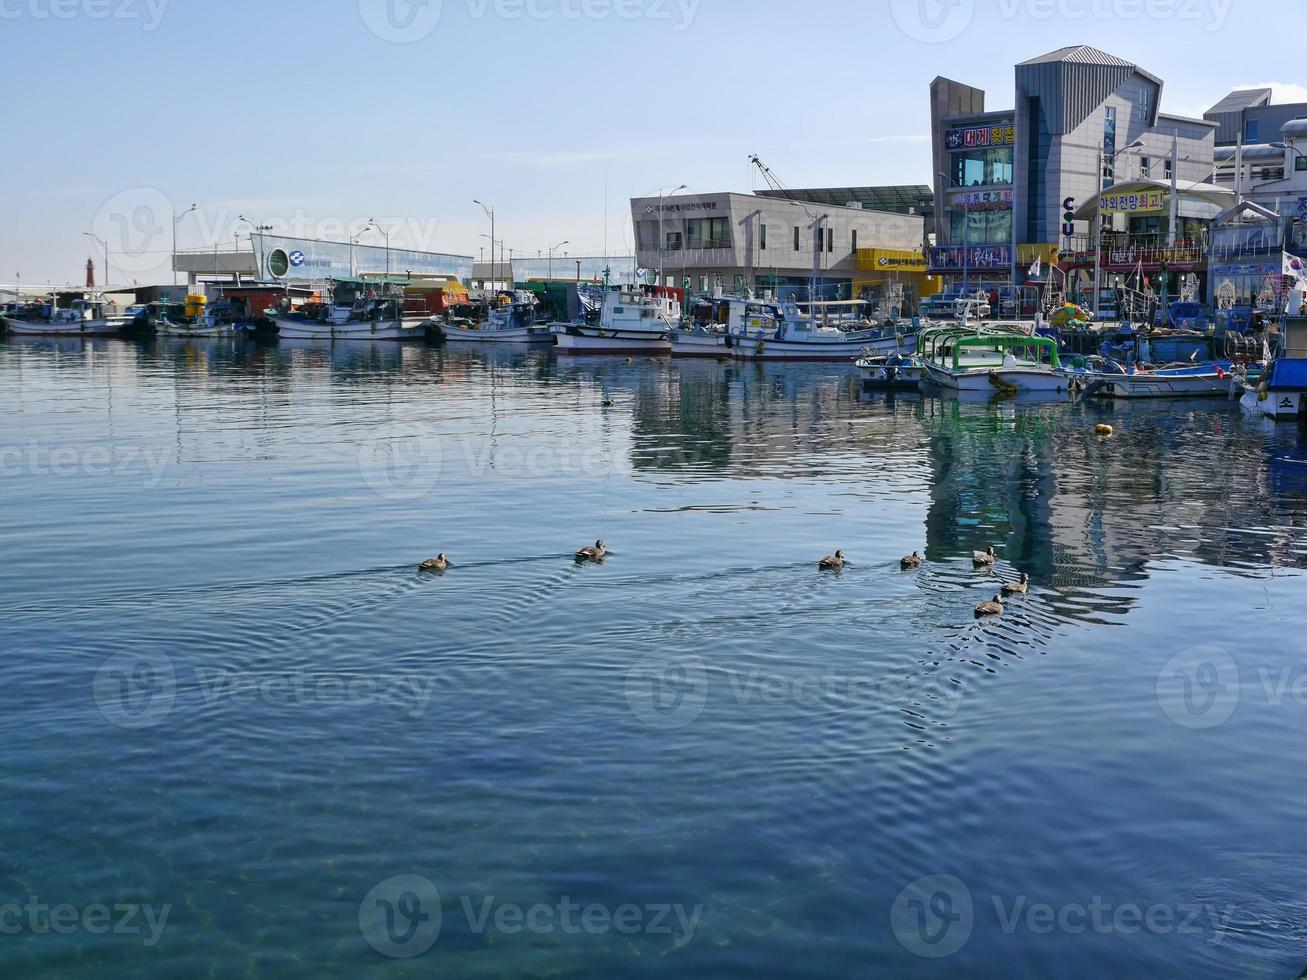 aves marinas en la bahía de la ciudad de sokcho. Corea del Sur. diciembre de 2017 foto